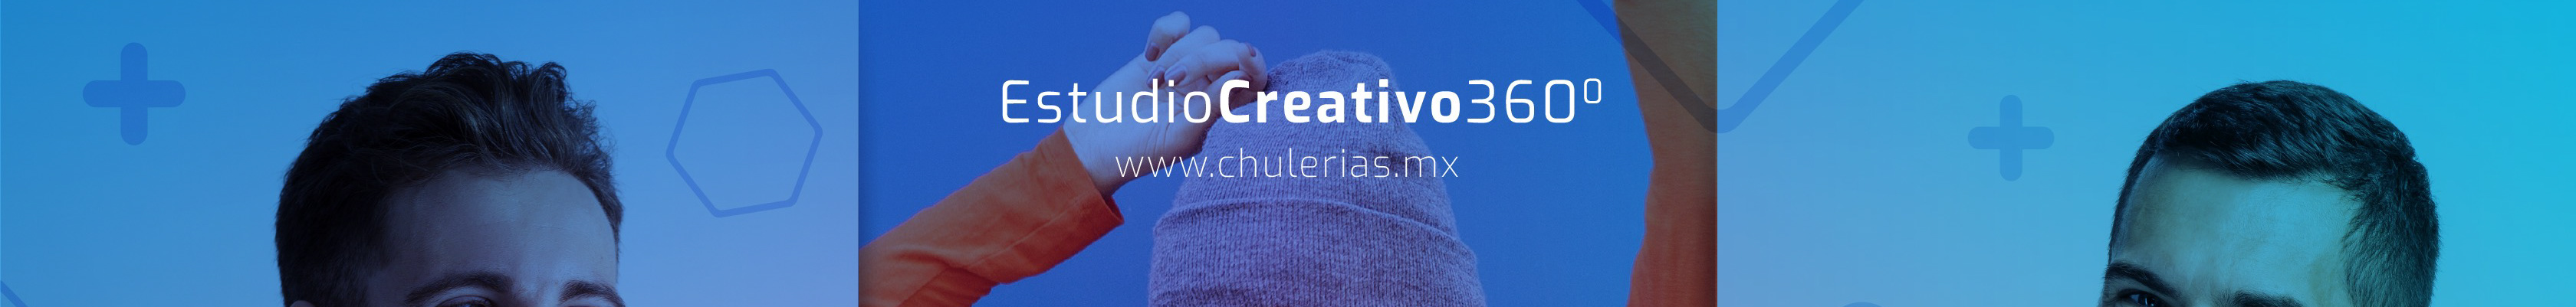 Chulerías Mx's profile banner